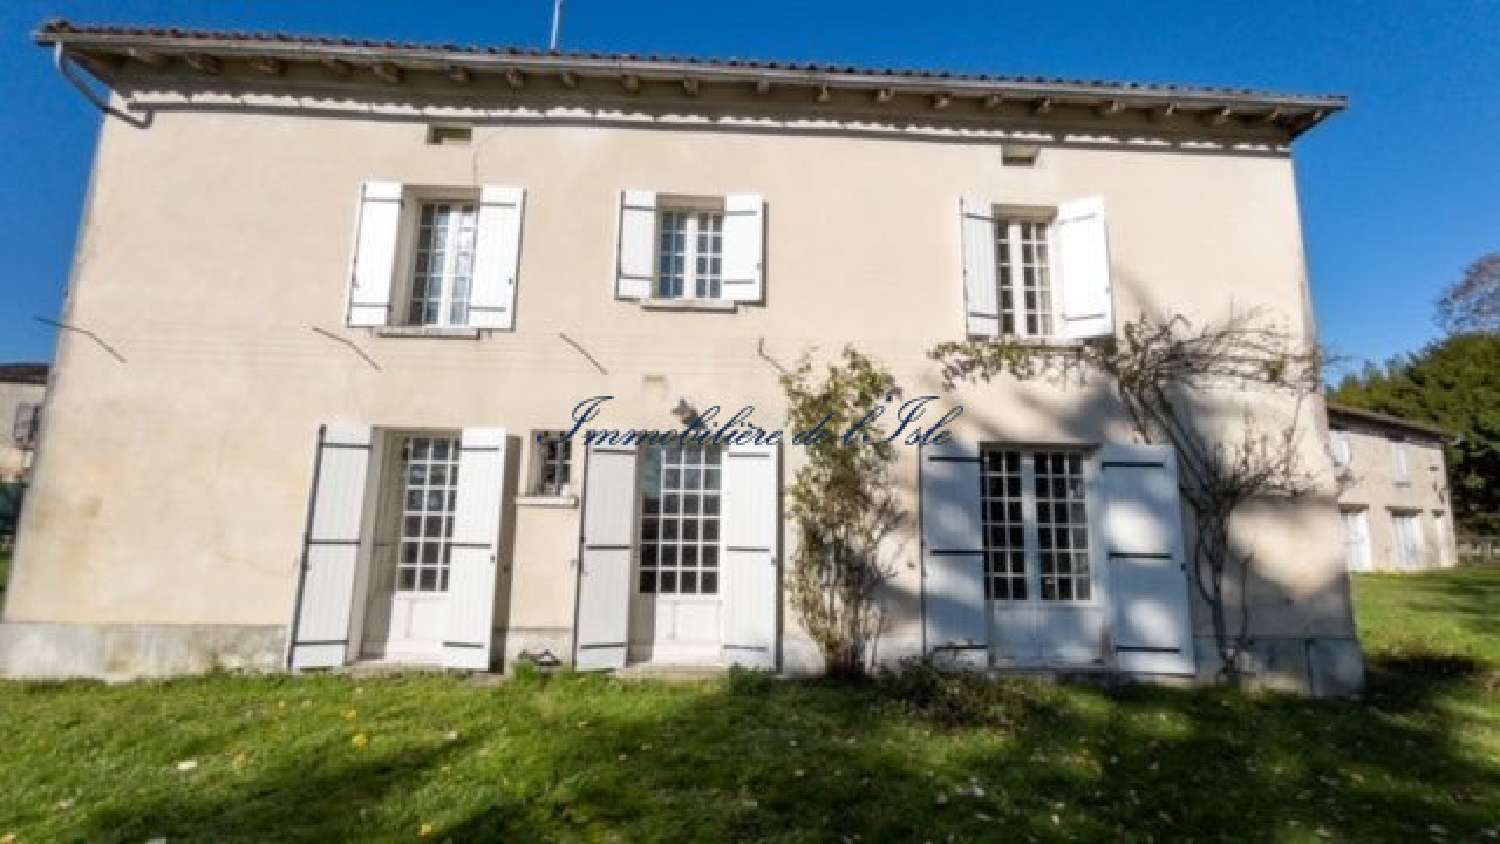  à vendre maison Rudeau-Ladosse Dordogne 3